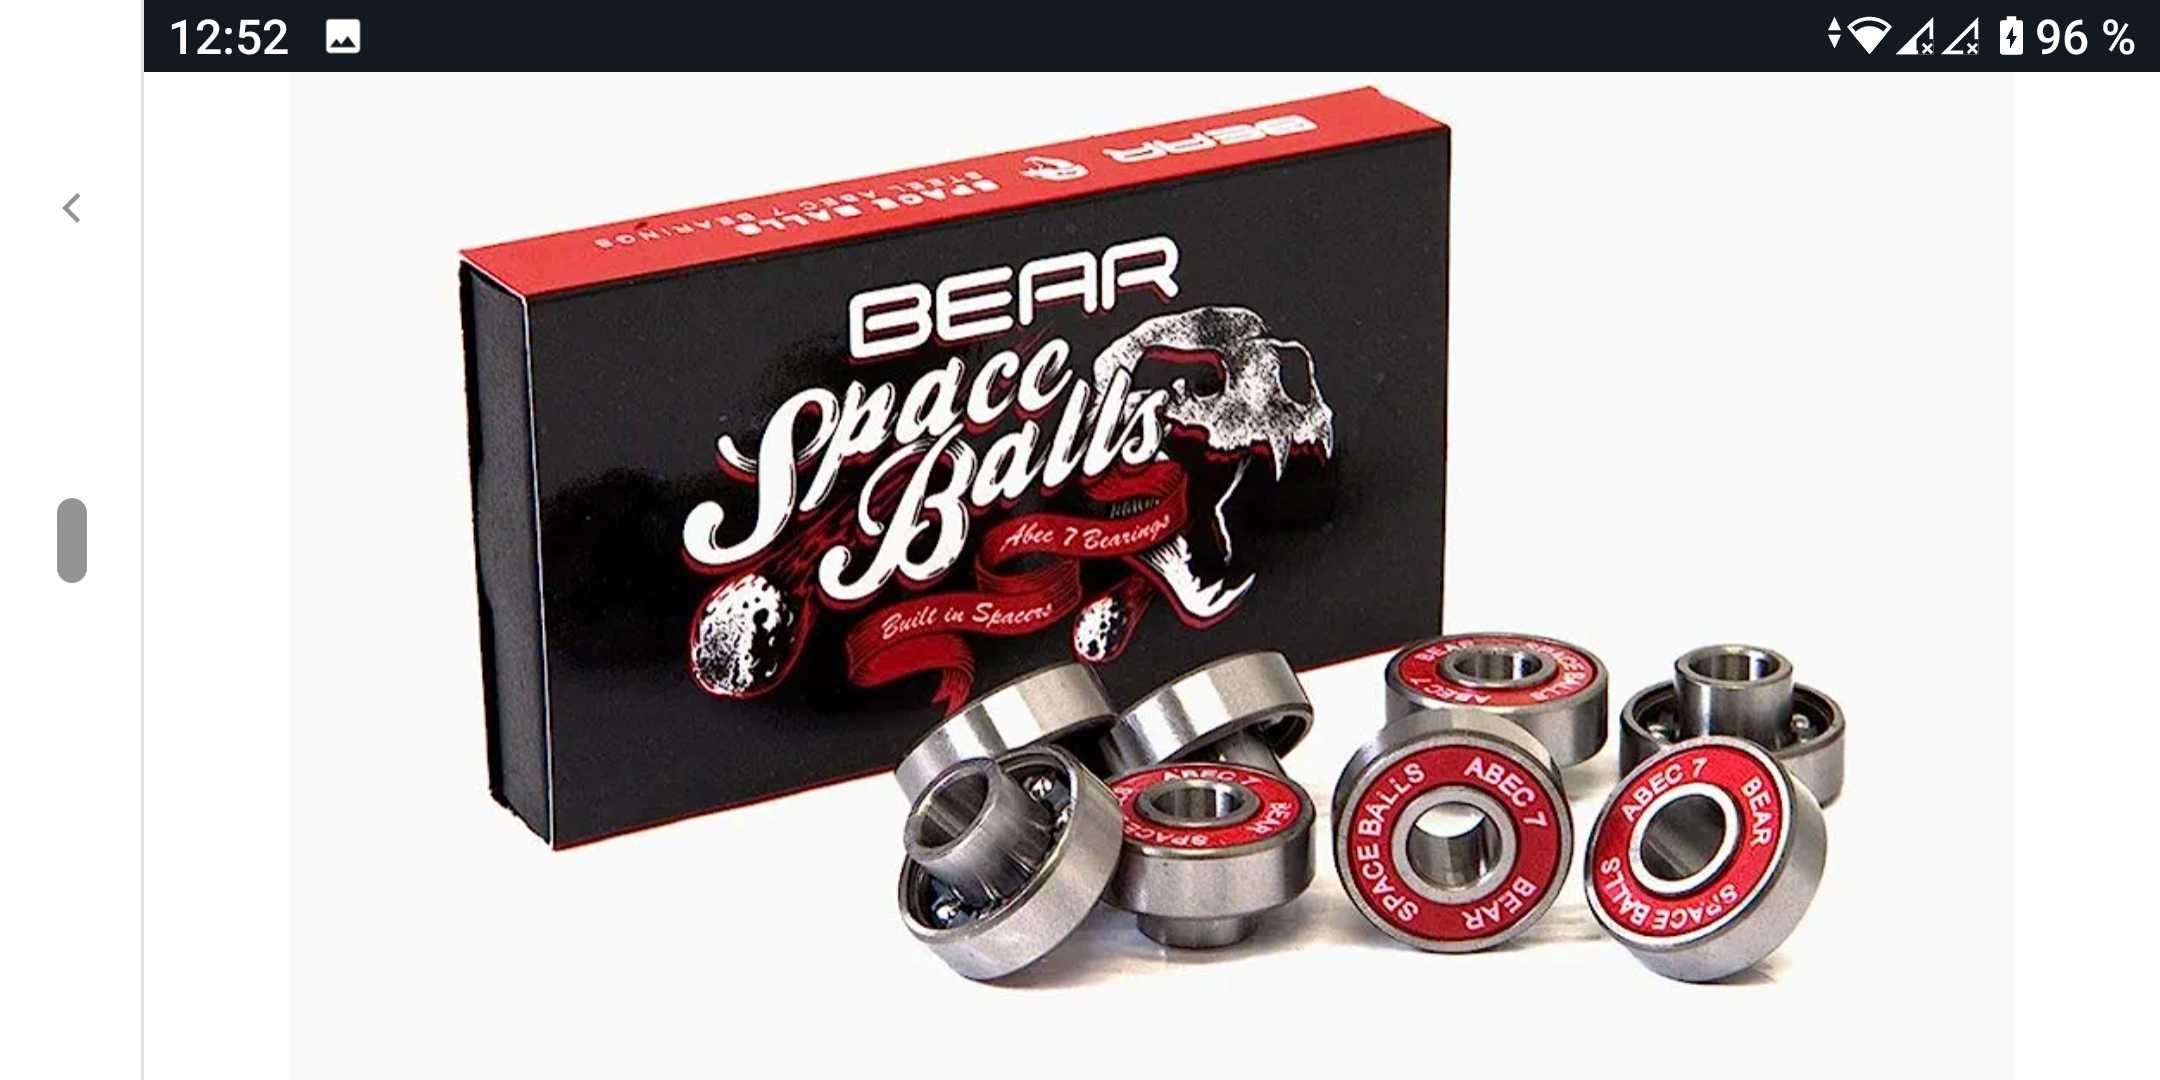 подшипники BEAR space balls для скейтборда